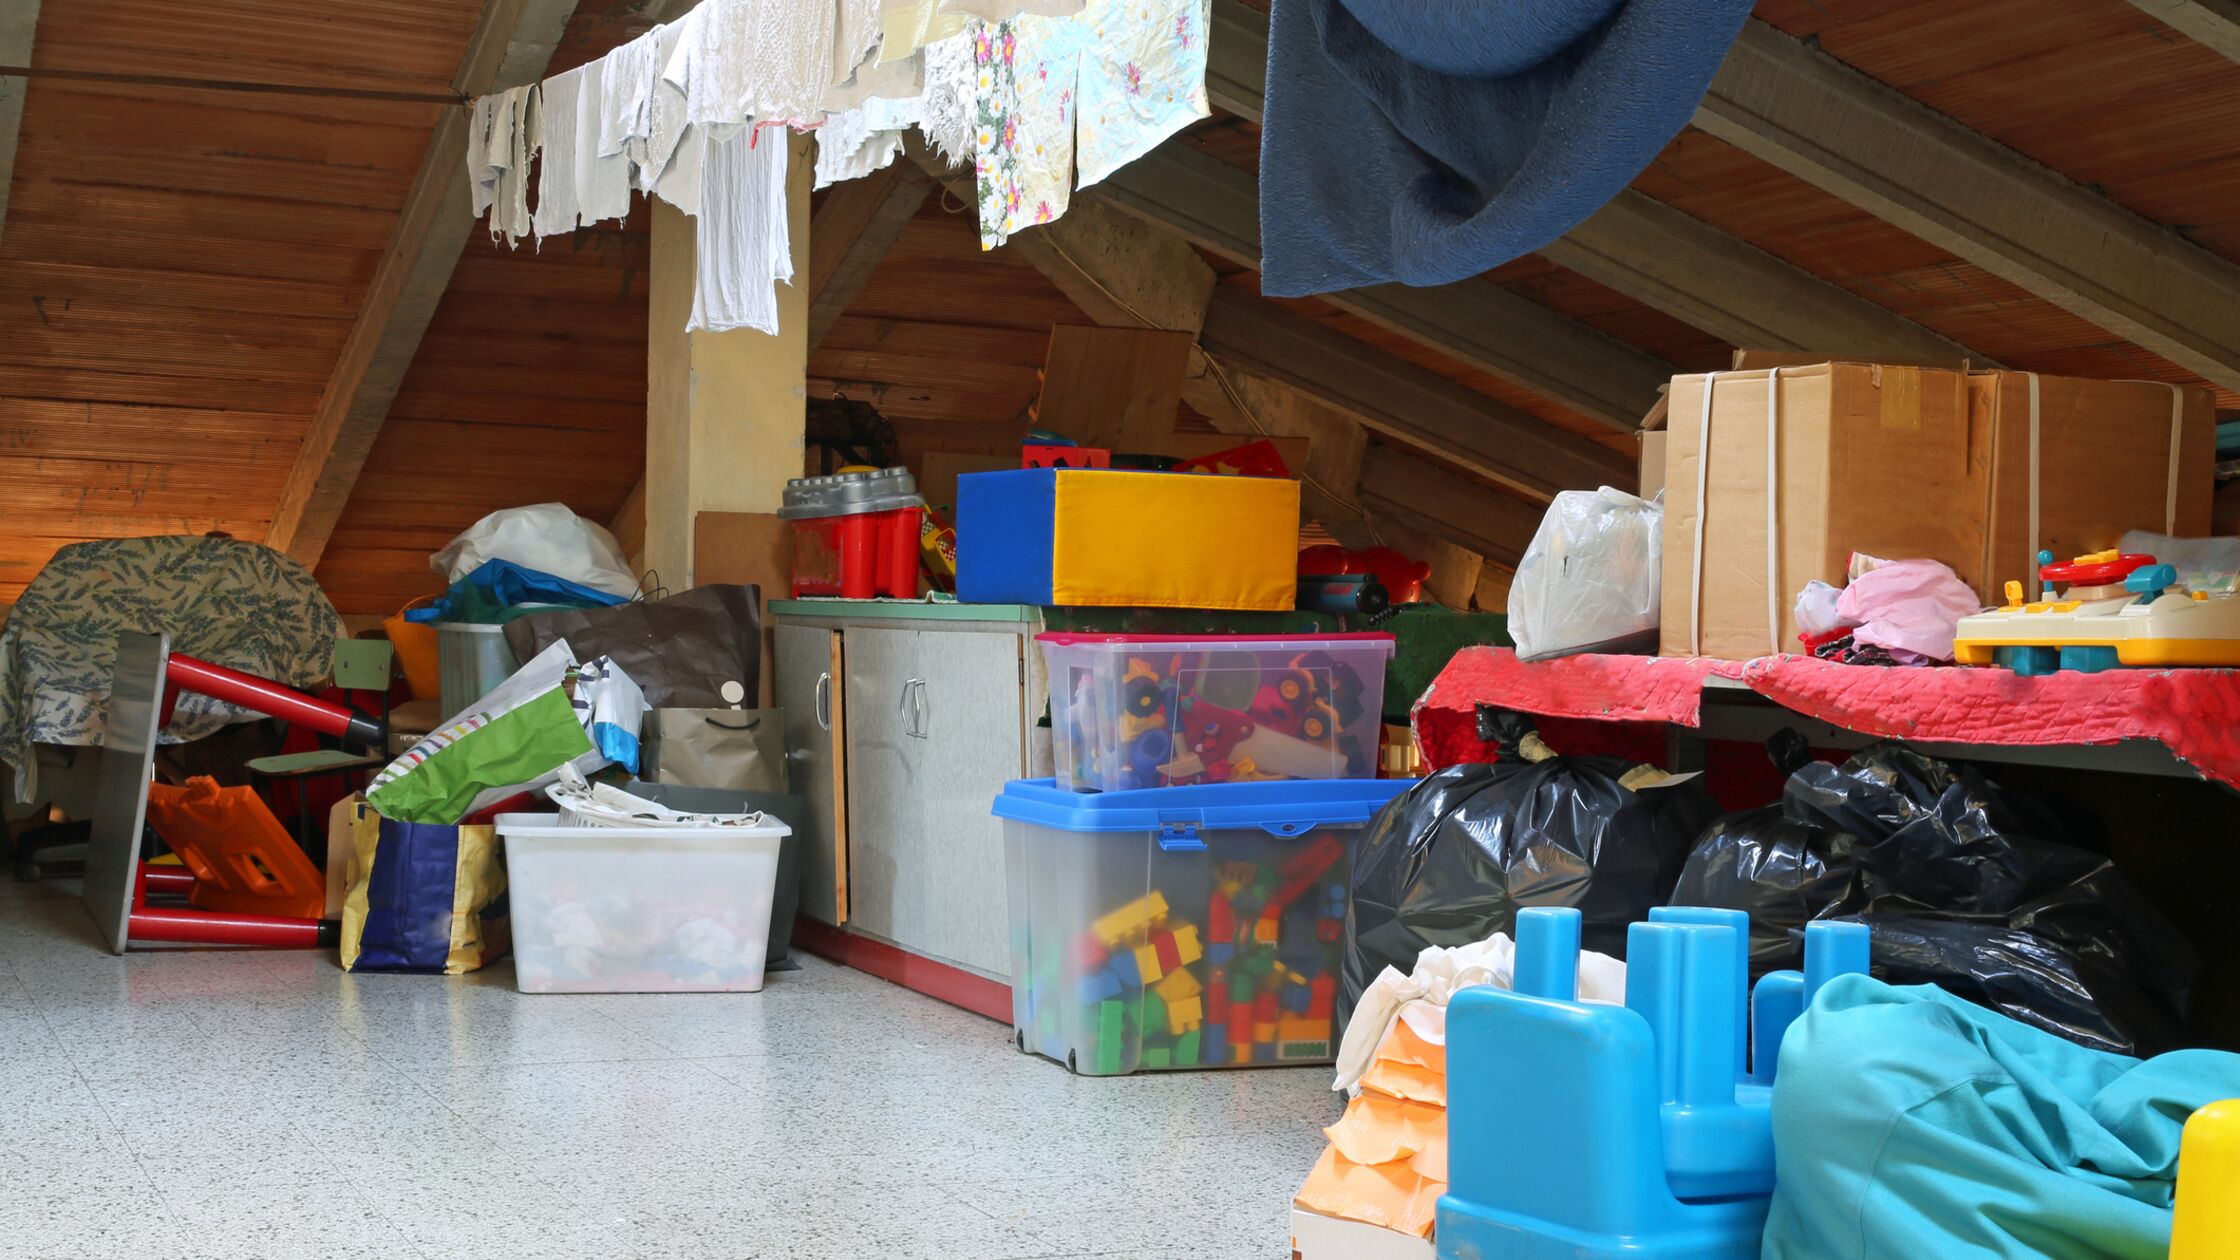 Dachboden voller Kisten mit Spielzeug und Wäscheleine